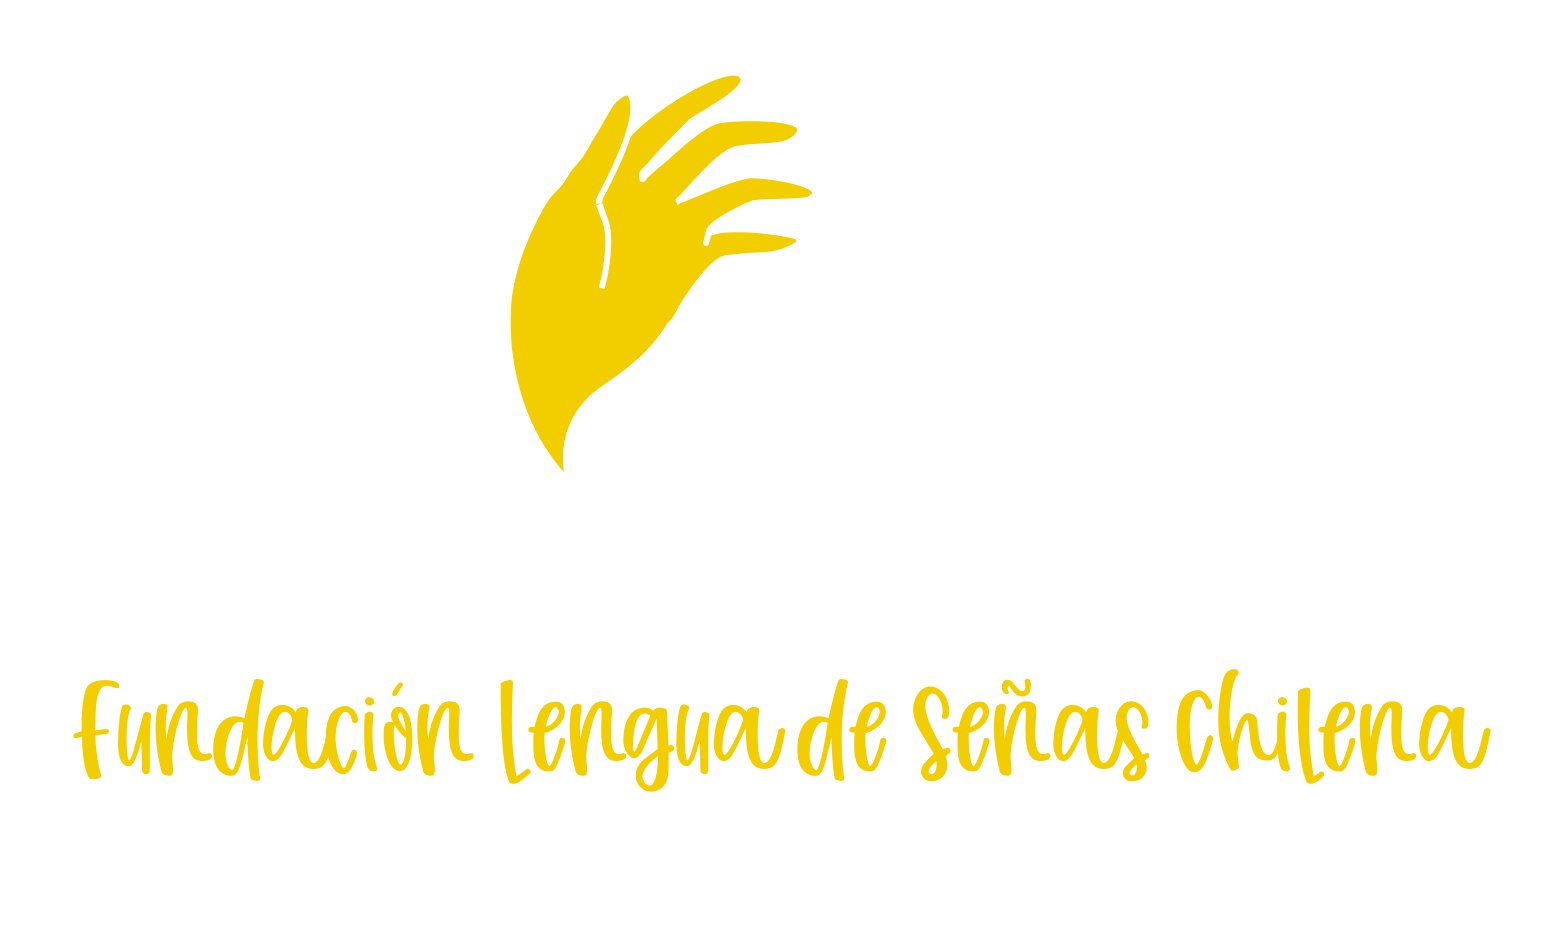 Fundación Lengua de Señas Chilena, Lengua Natural, Originaria y Patrimonio Intangible de las Personas Sordas.